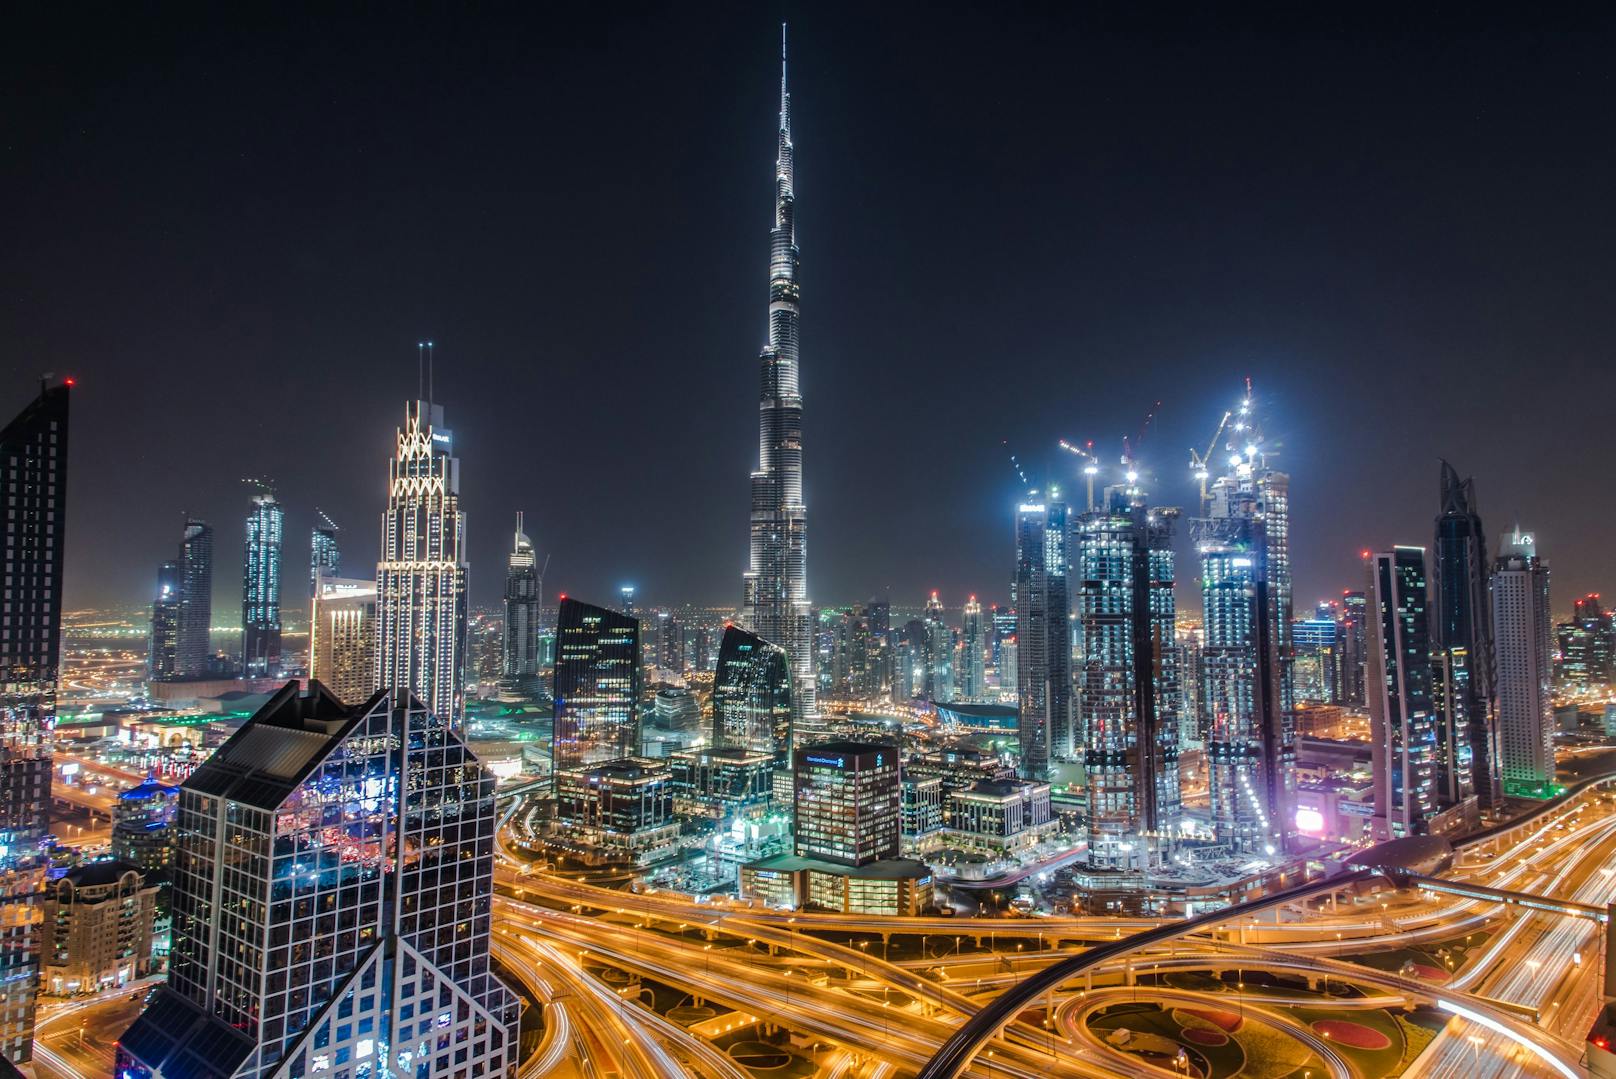 <strong>Dubai, Vereinigte Arabische Emirate! </strong>"Ich bin nur hier, um Dubai zu erwähnen. Ich habe dort auf der Durchreise zehn Tage verbracht und habe schon nach 24 Stunden alles gesehen. Viel zu viele verdammte Einkaufszentren, keine Kultur", sagt ein User über die Luxus-Stadt, die für den Burj Khalifa und palmenförmige Inseln bekannt ist. Ein ehemaliger Bewohner von Dubai, User mal1k7 sieht es ähnlich und ergänzt: "Ich bin dort aufgewachsen, bevor ich nach Kanada gezogen bin. Ich will nie wieder dorthin zurück. Die ganze Stadt wurde mit dem Blut günstiger Arbeitskräfte aus Pakistan, Indien, Sri Lanka und Bangladesch erbaut."